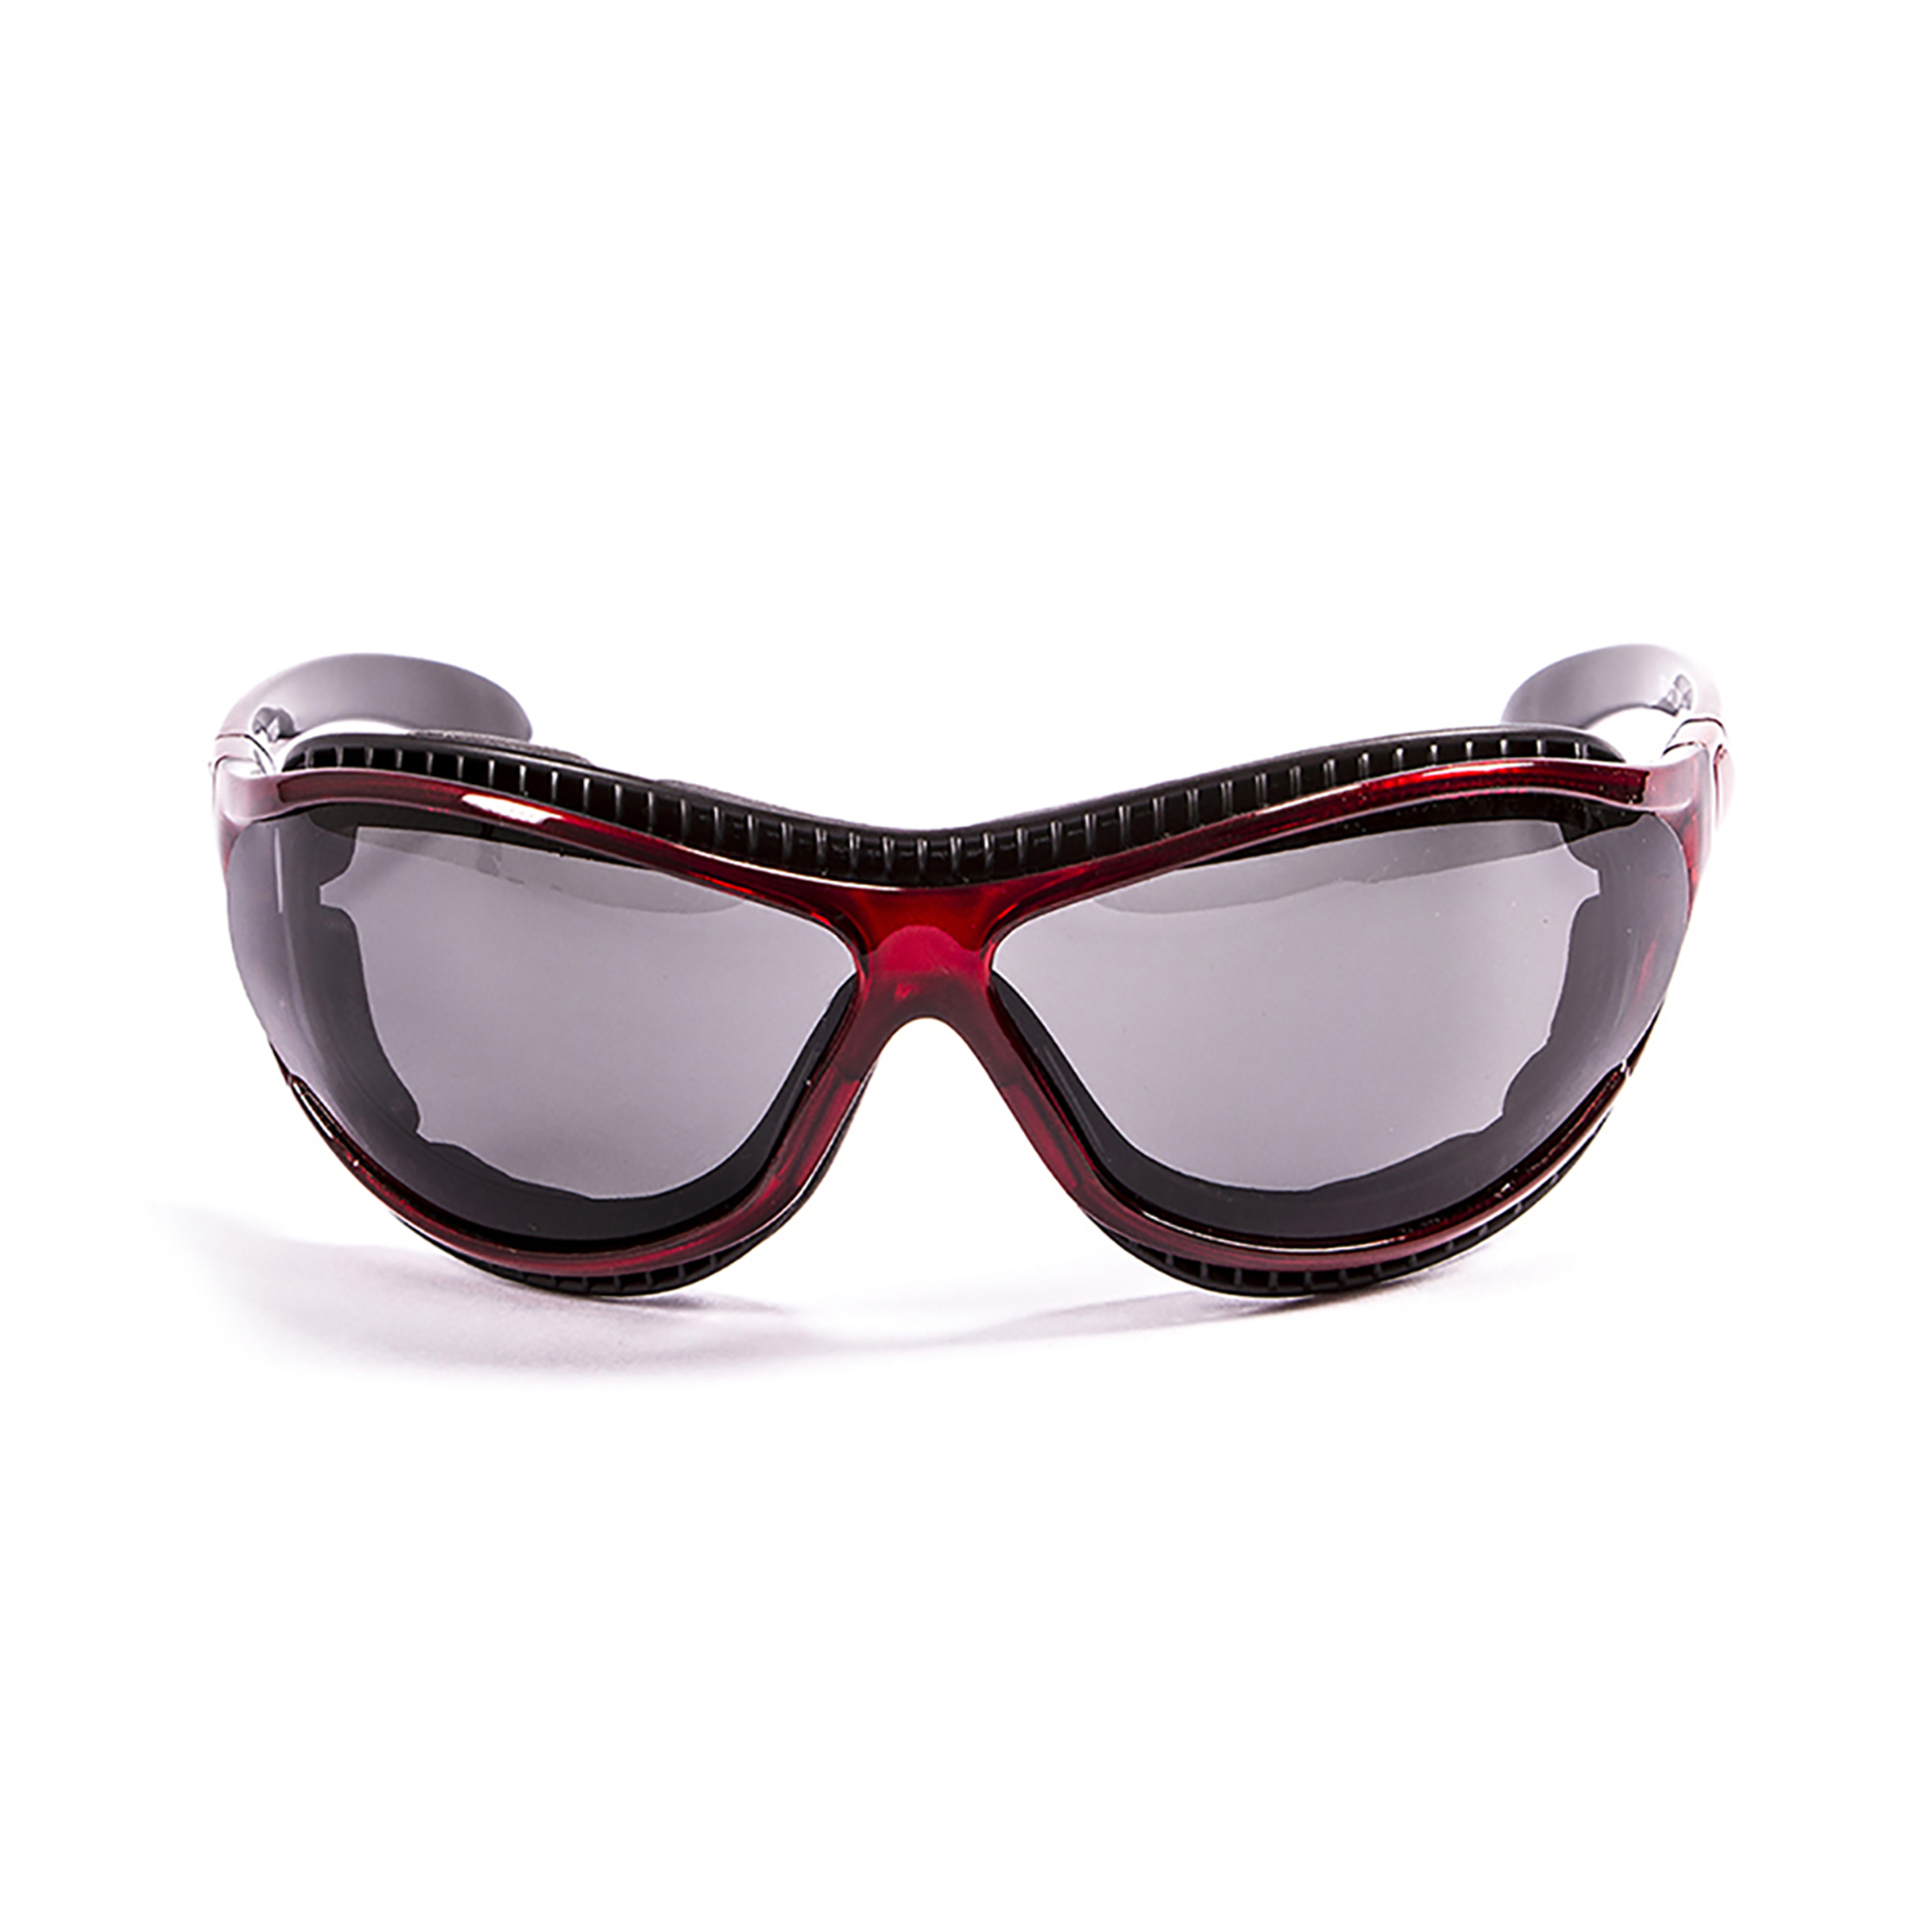 Gafas De Sol Técnicas Para La Práctica De Deportes De Agua Tierra De Fuego Ocean Sunglasses - negro-rojo - 